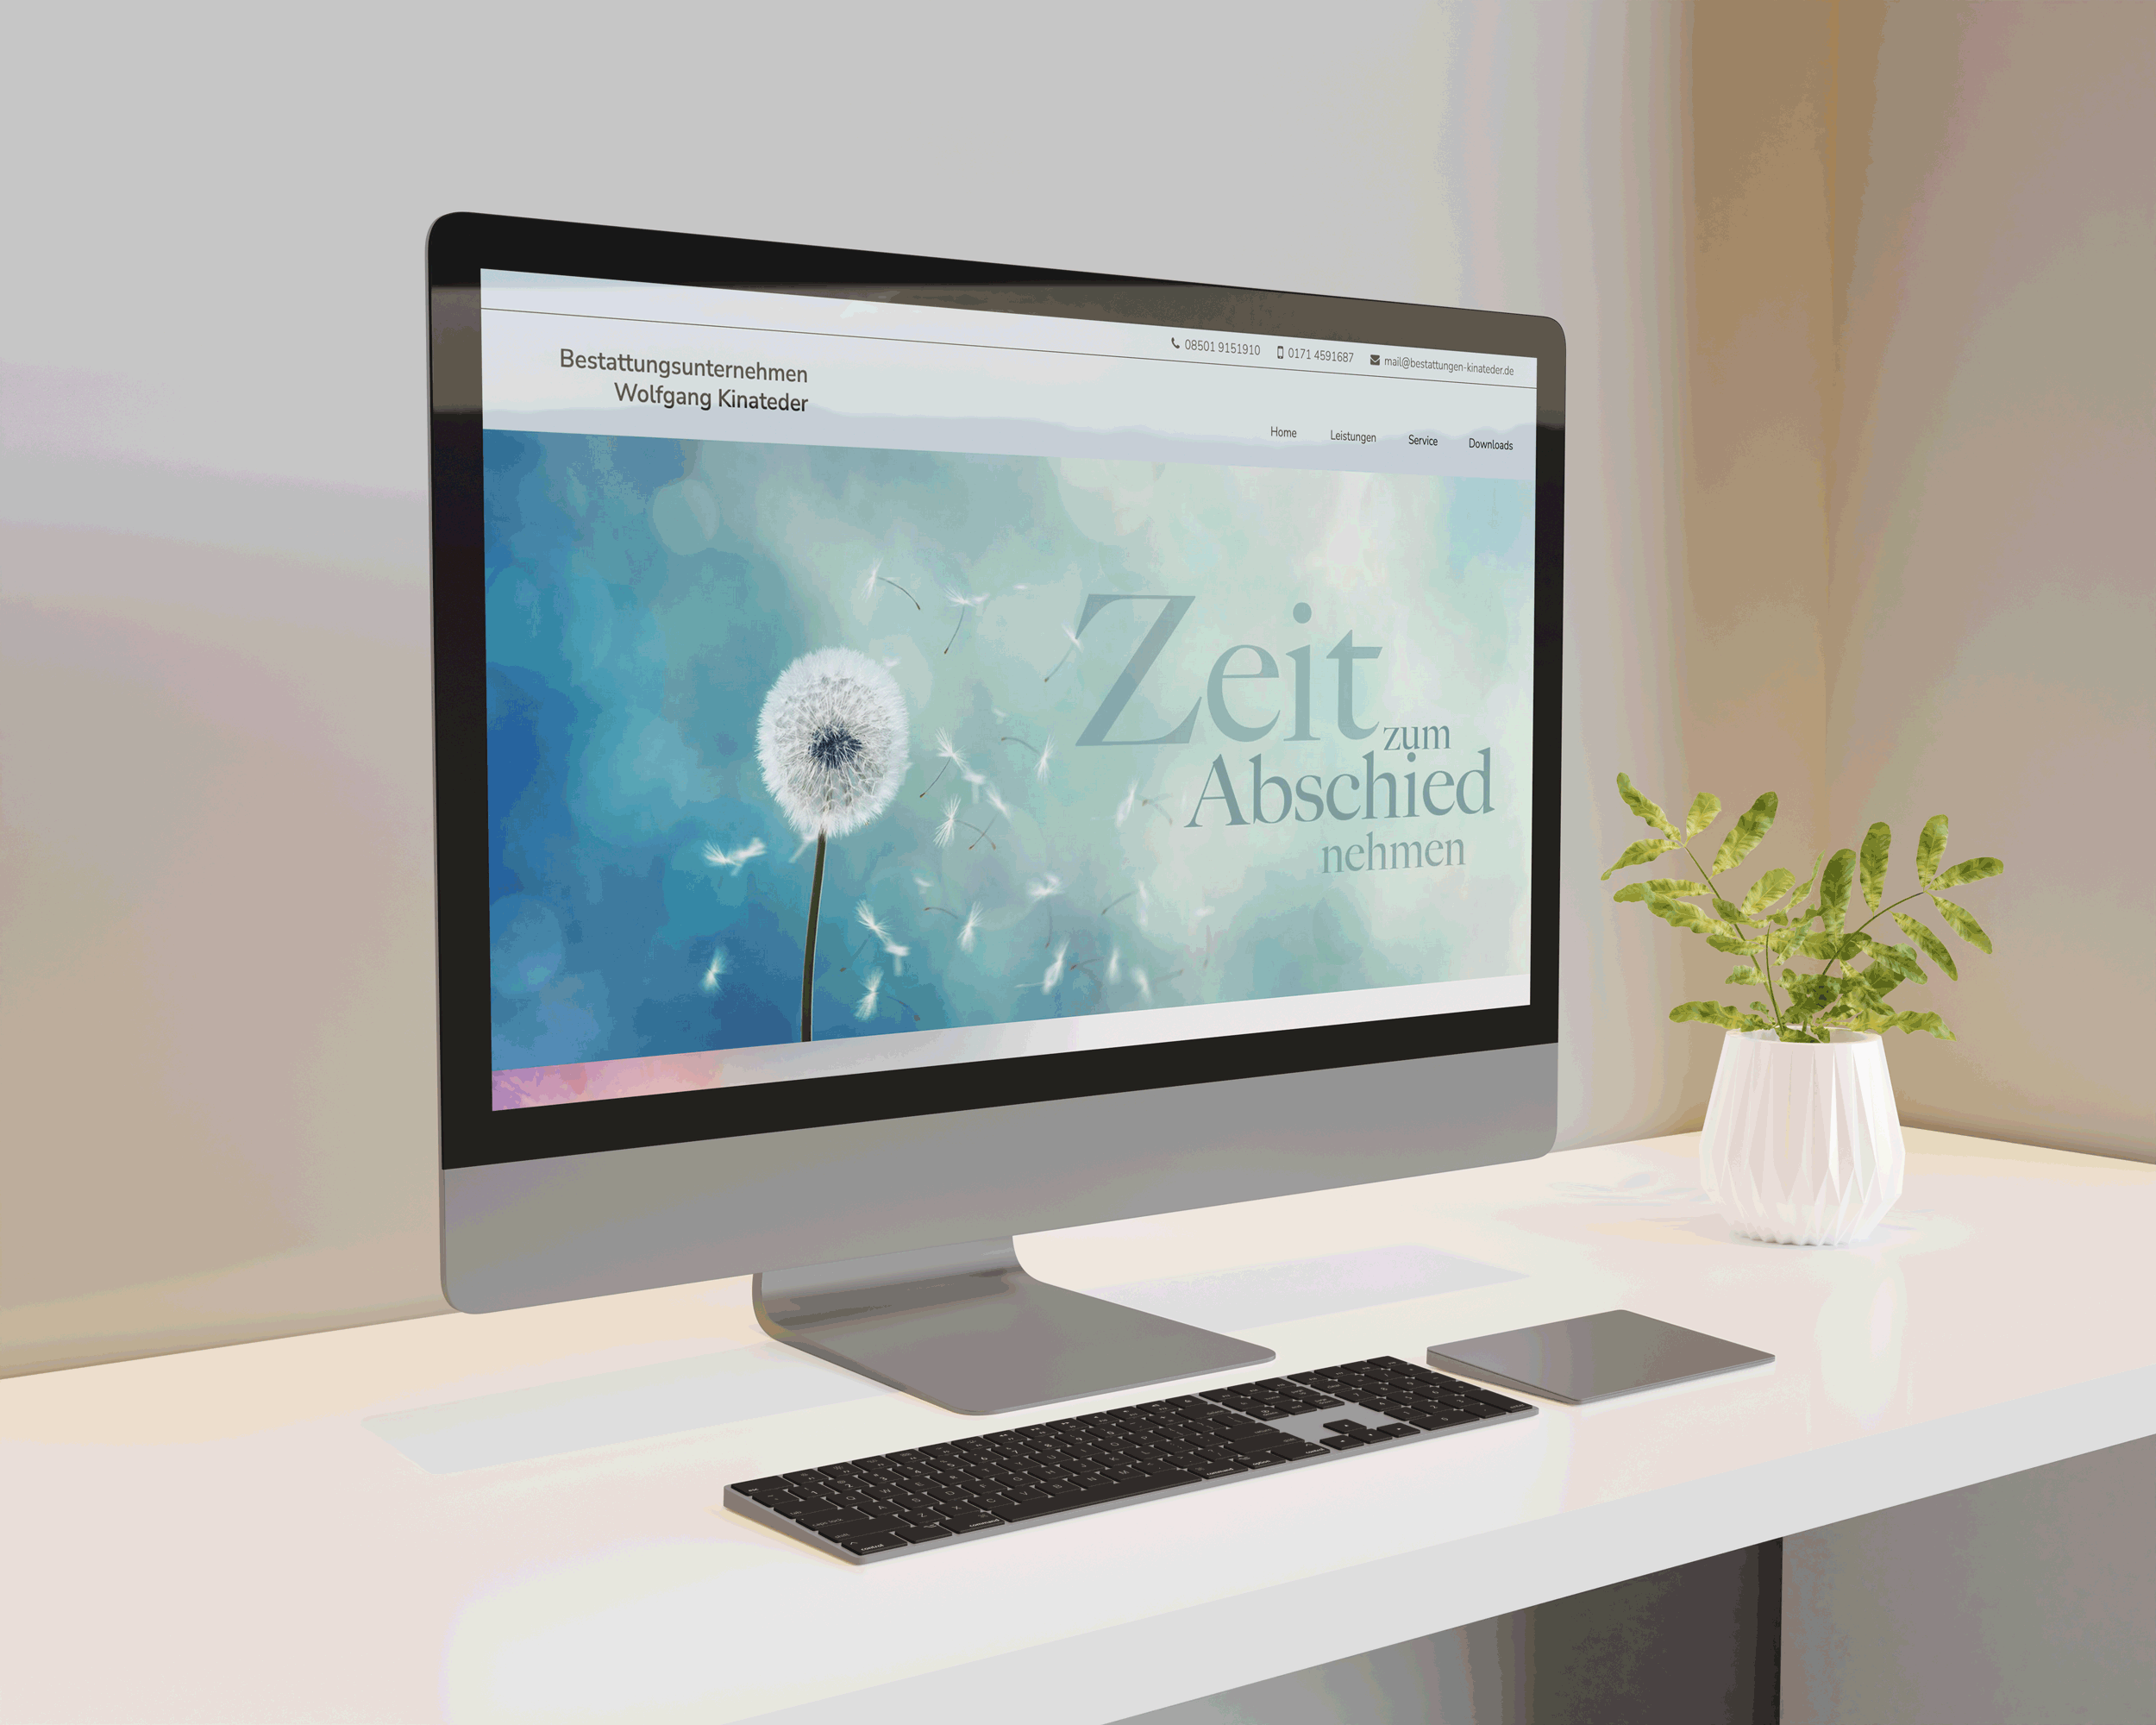 Design und Programmierung Website Bestattungsunternehmen Kinateder  - M&W Werbeagentur Eging/Passau